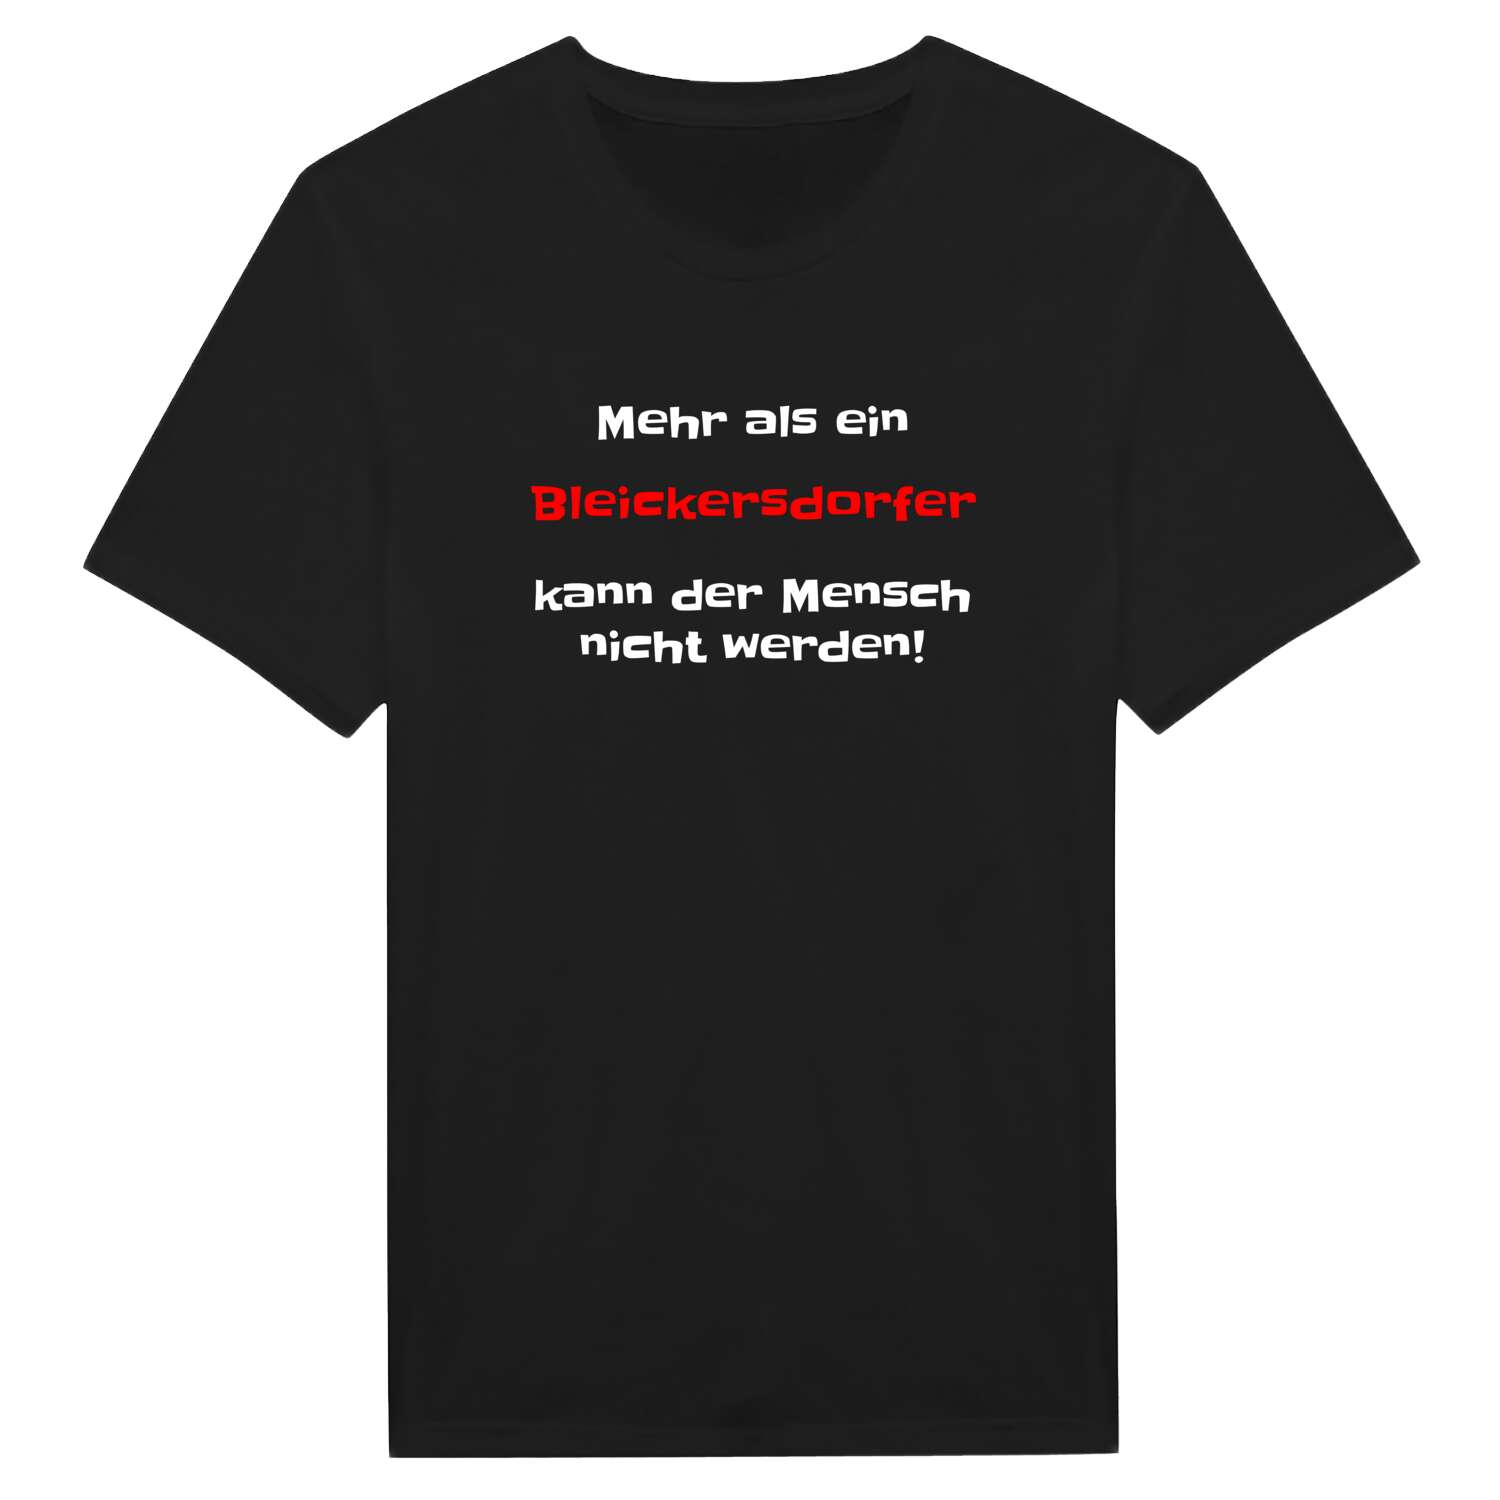 Bleickersdorf T-Shirt »Mehr als ein«